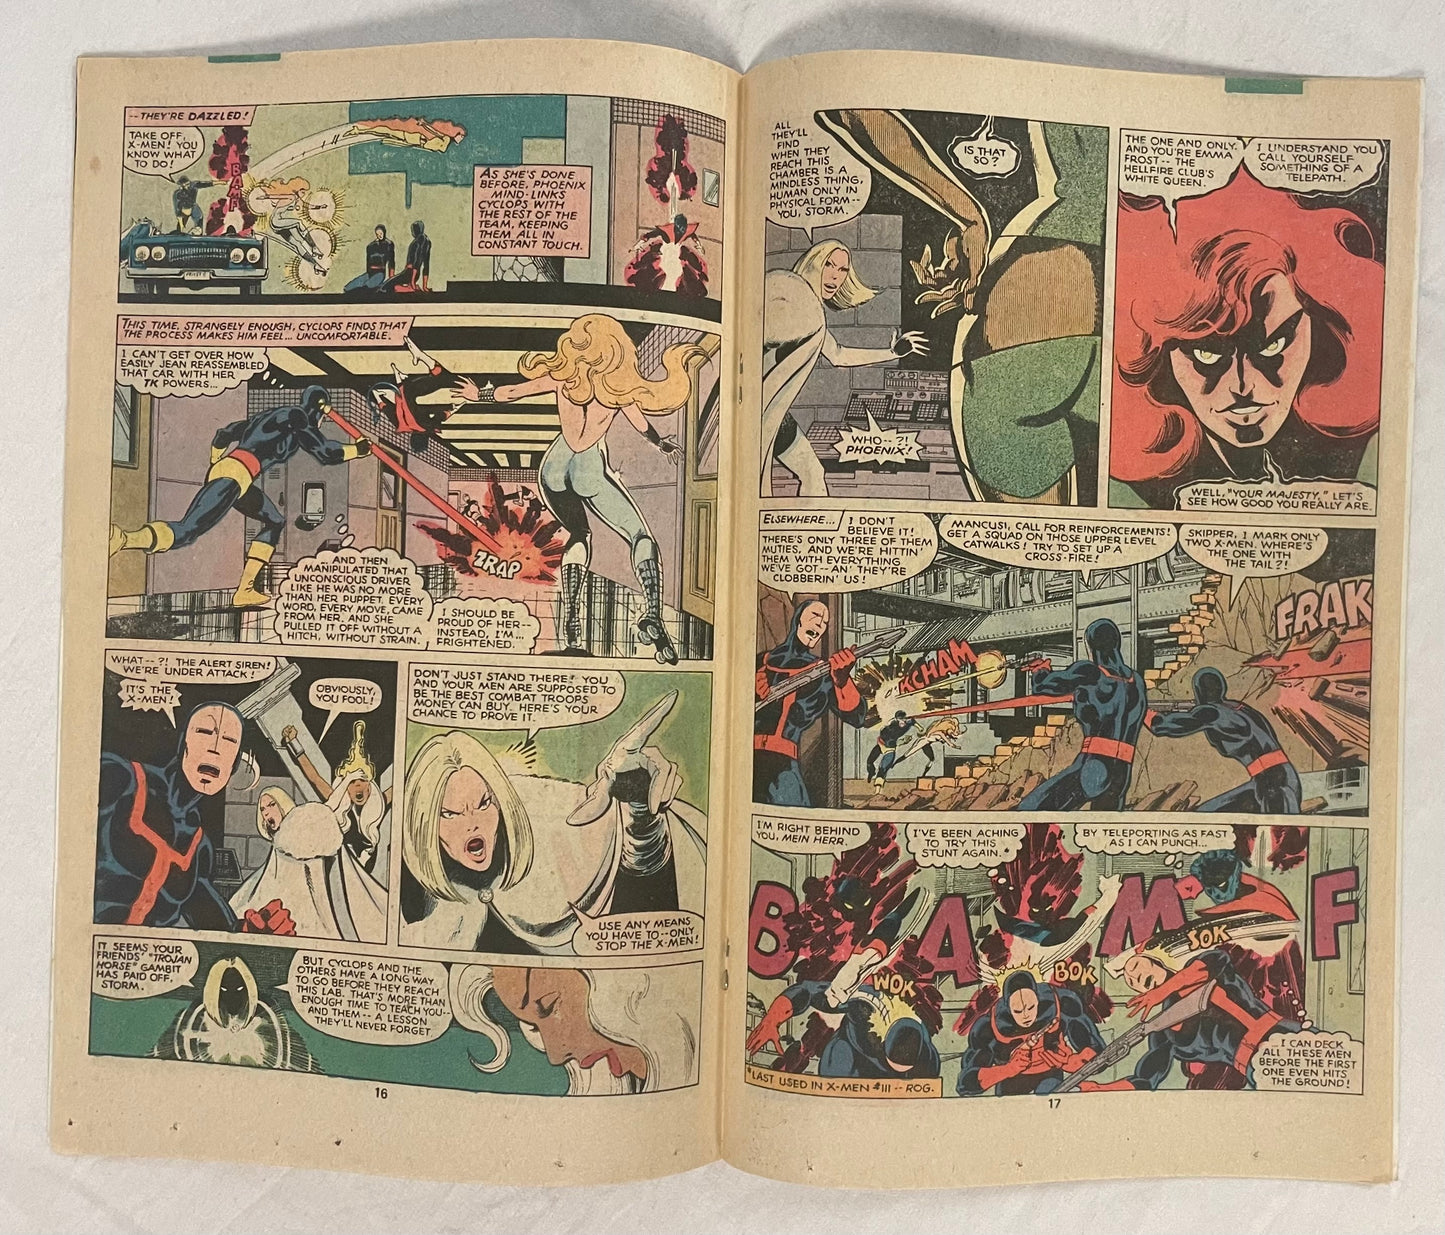 Marvel Comics The Uncanny X-MEN #131